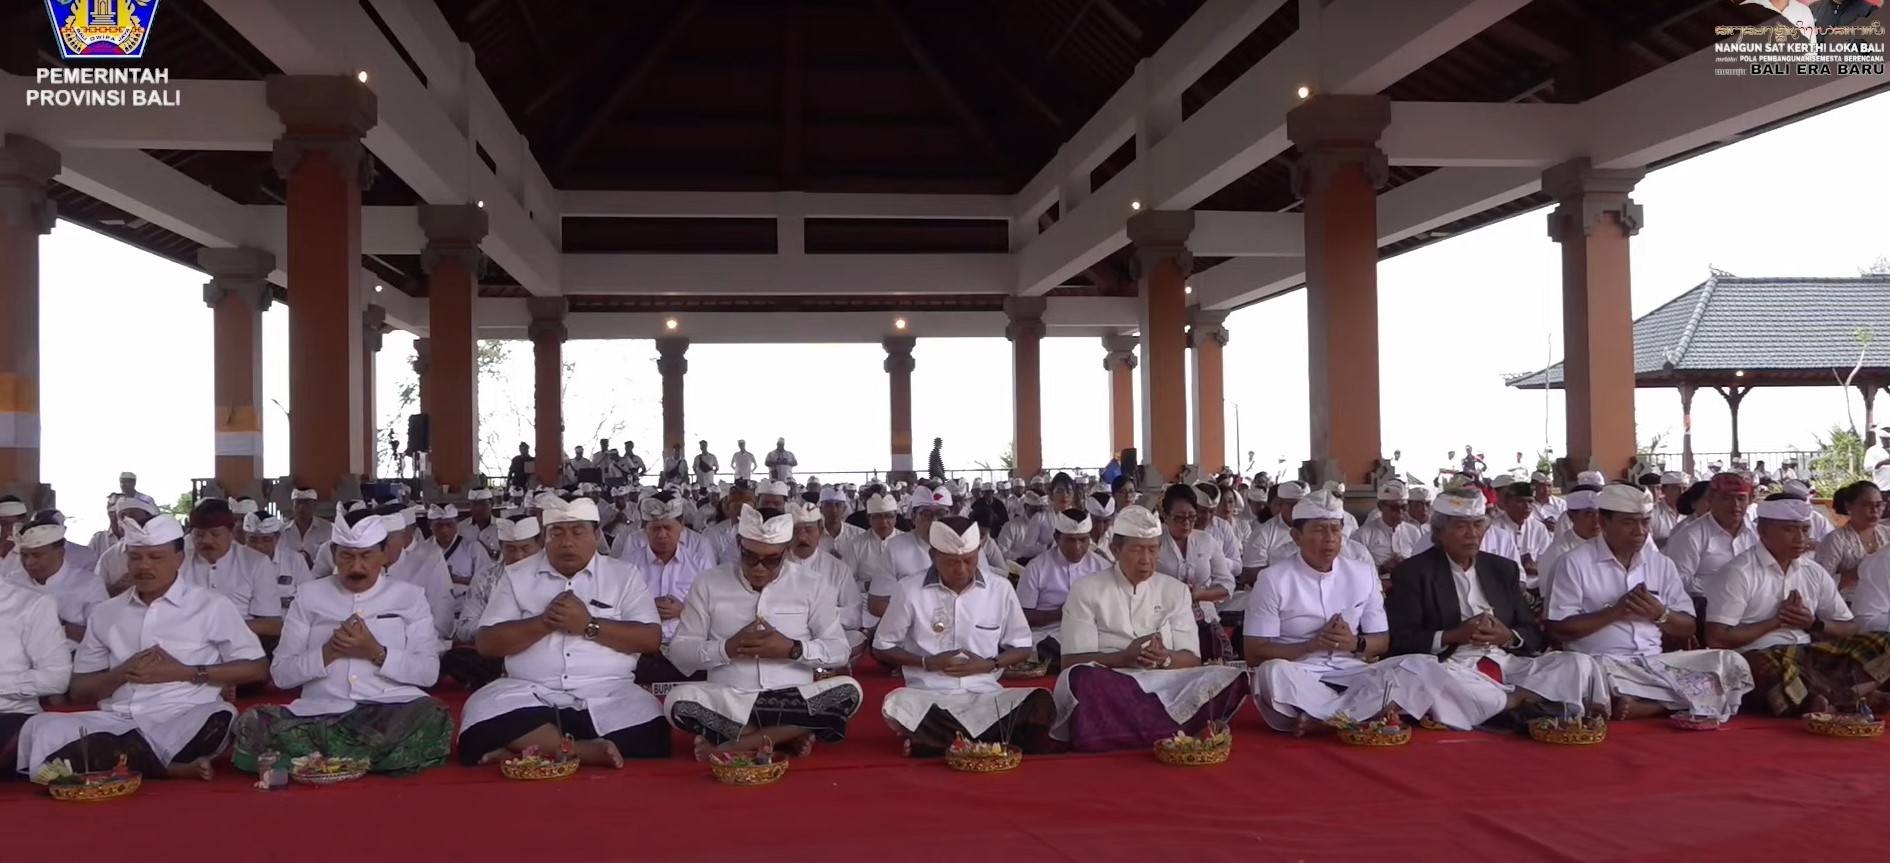 Jelang Peresmian  Bangunan dan Kawasan Suci Pura Agung Besakih Pemerintah Provinsi Bali Adakan Upacara Pemlaspas Besakih